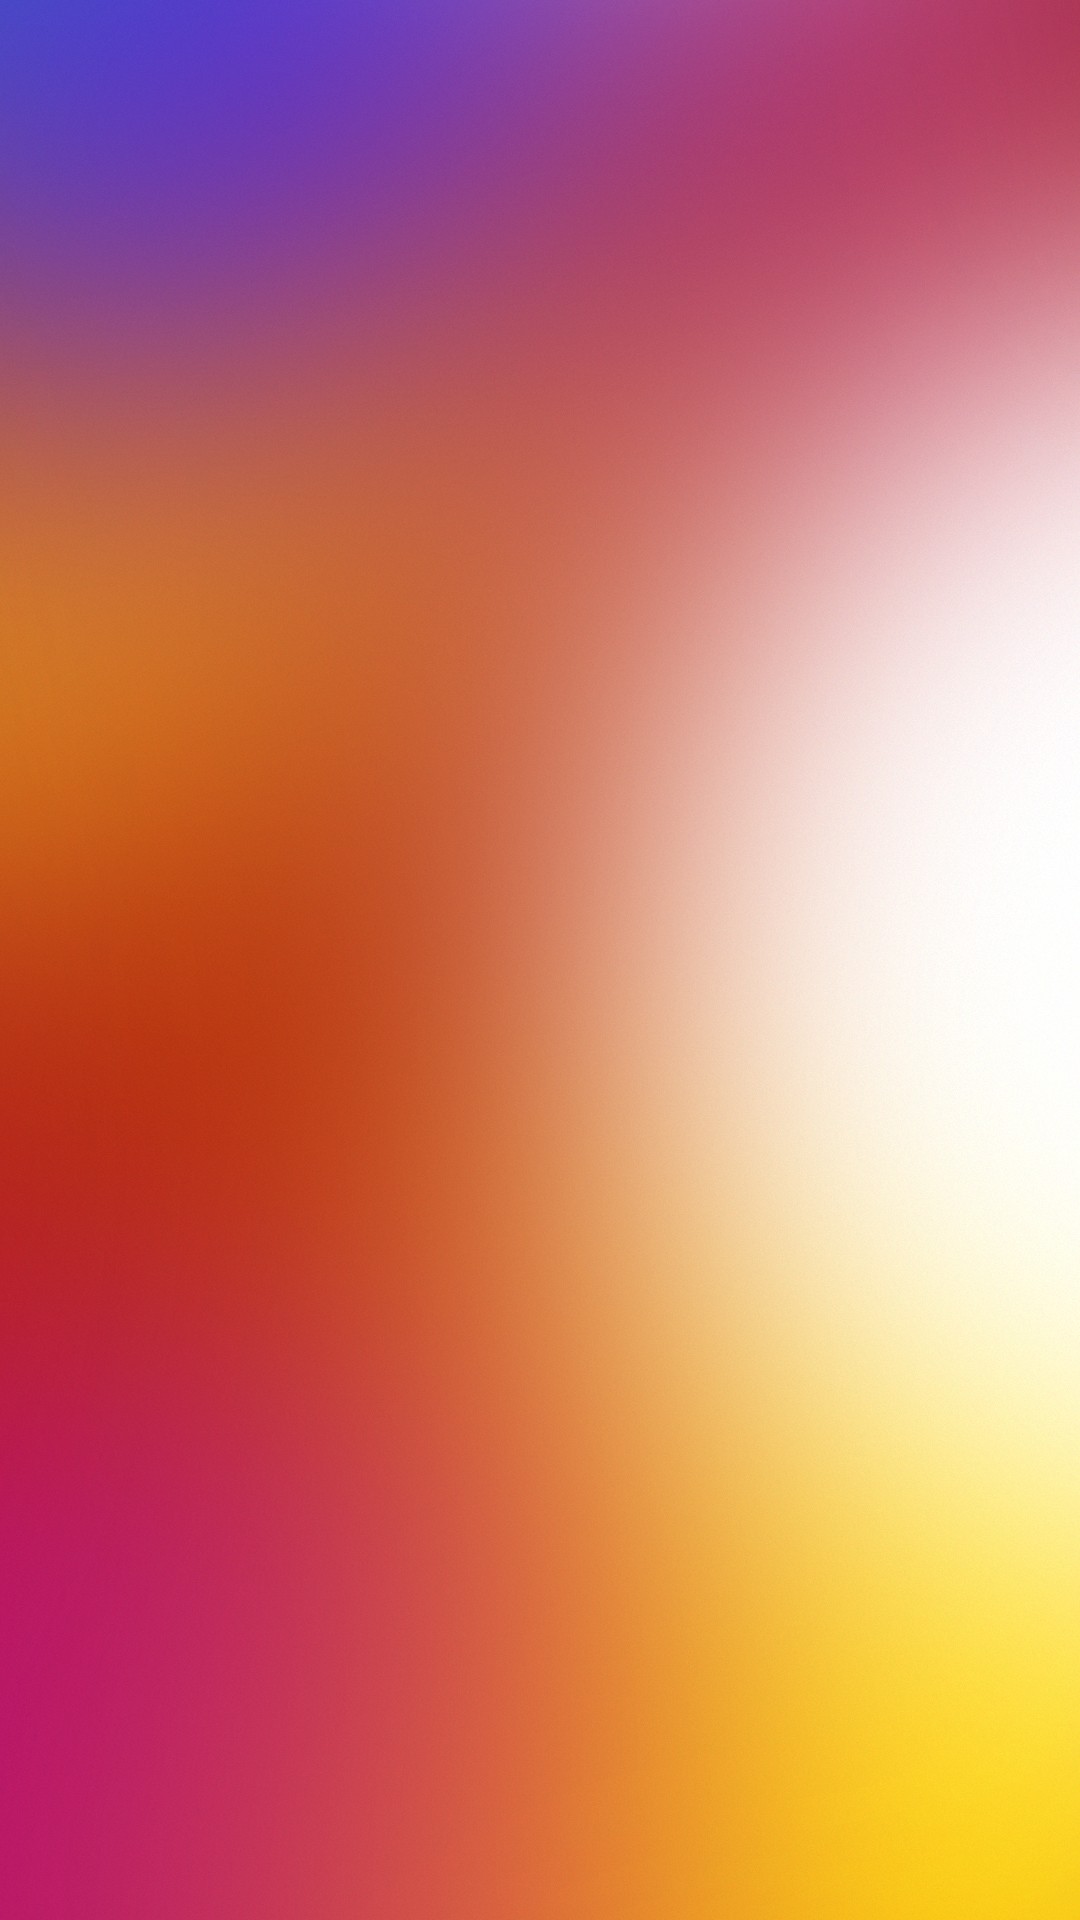 レノボk5ノート壁紙hd,空,オレンジ,ピンク,赤,黄